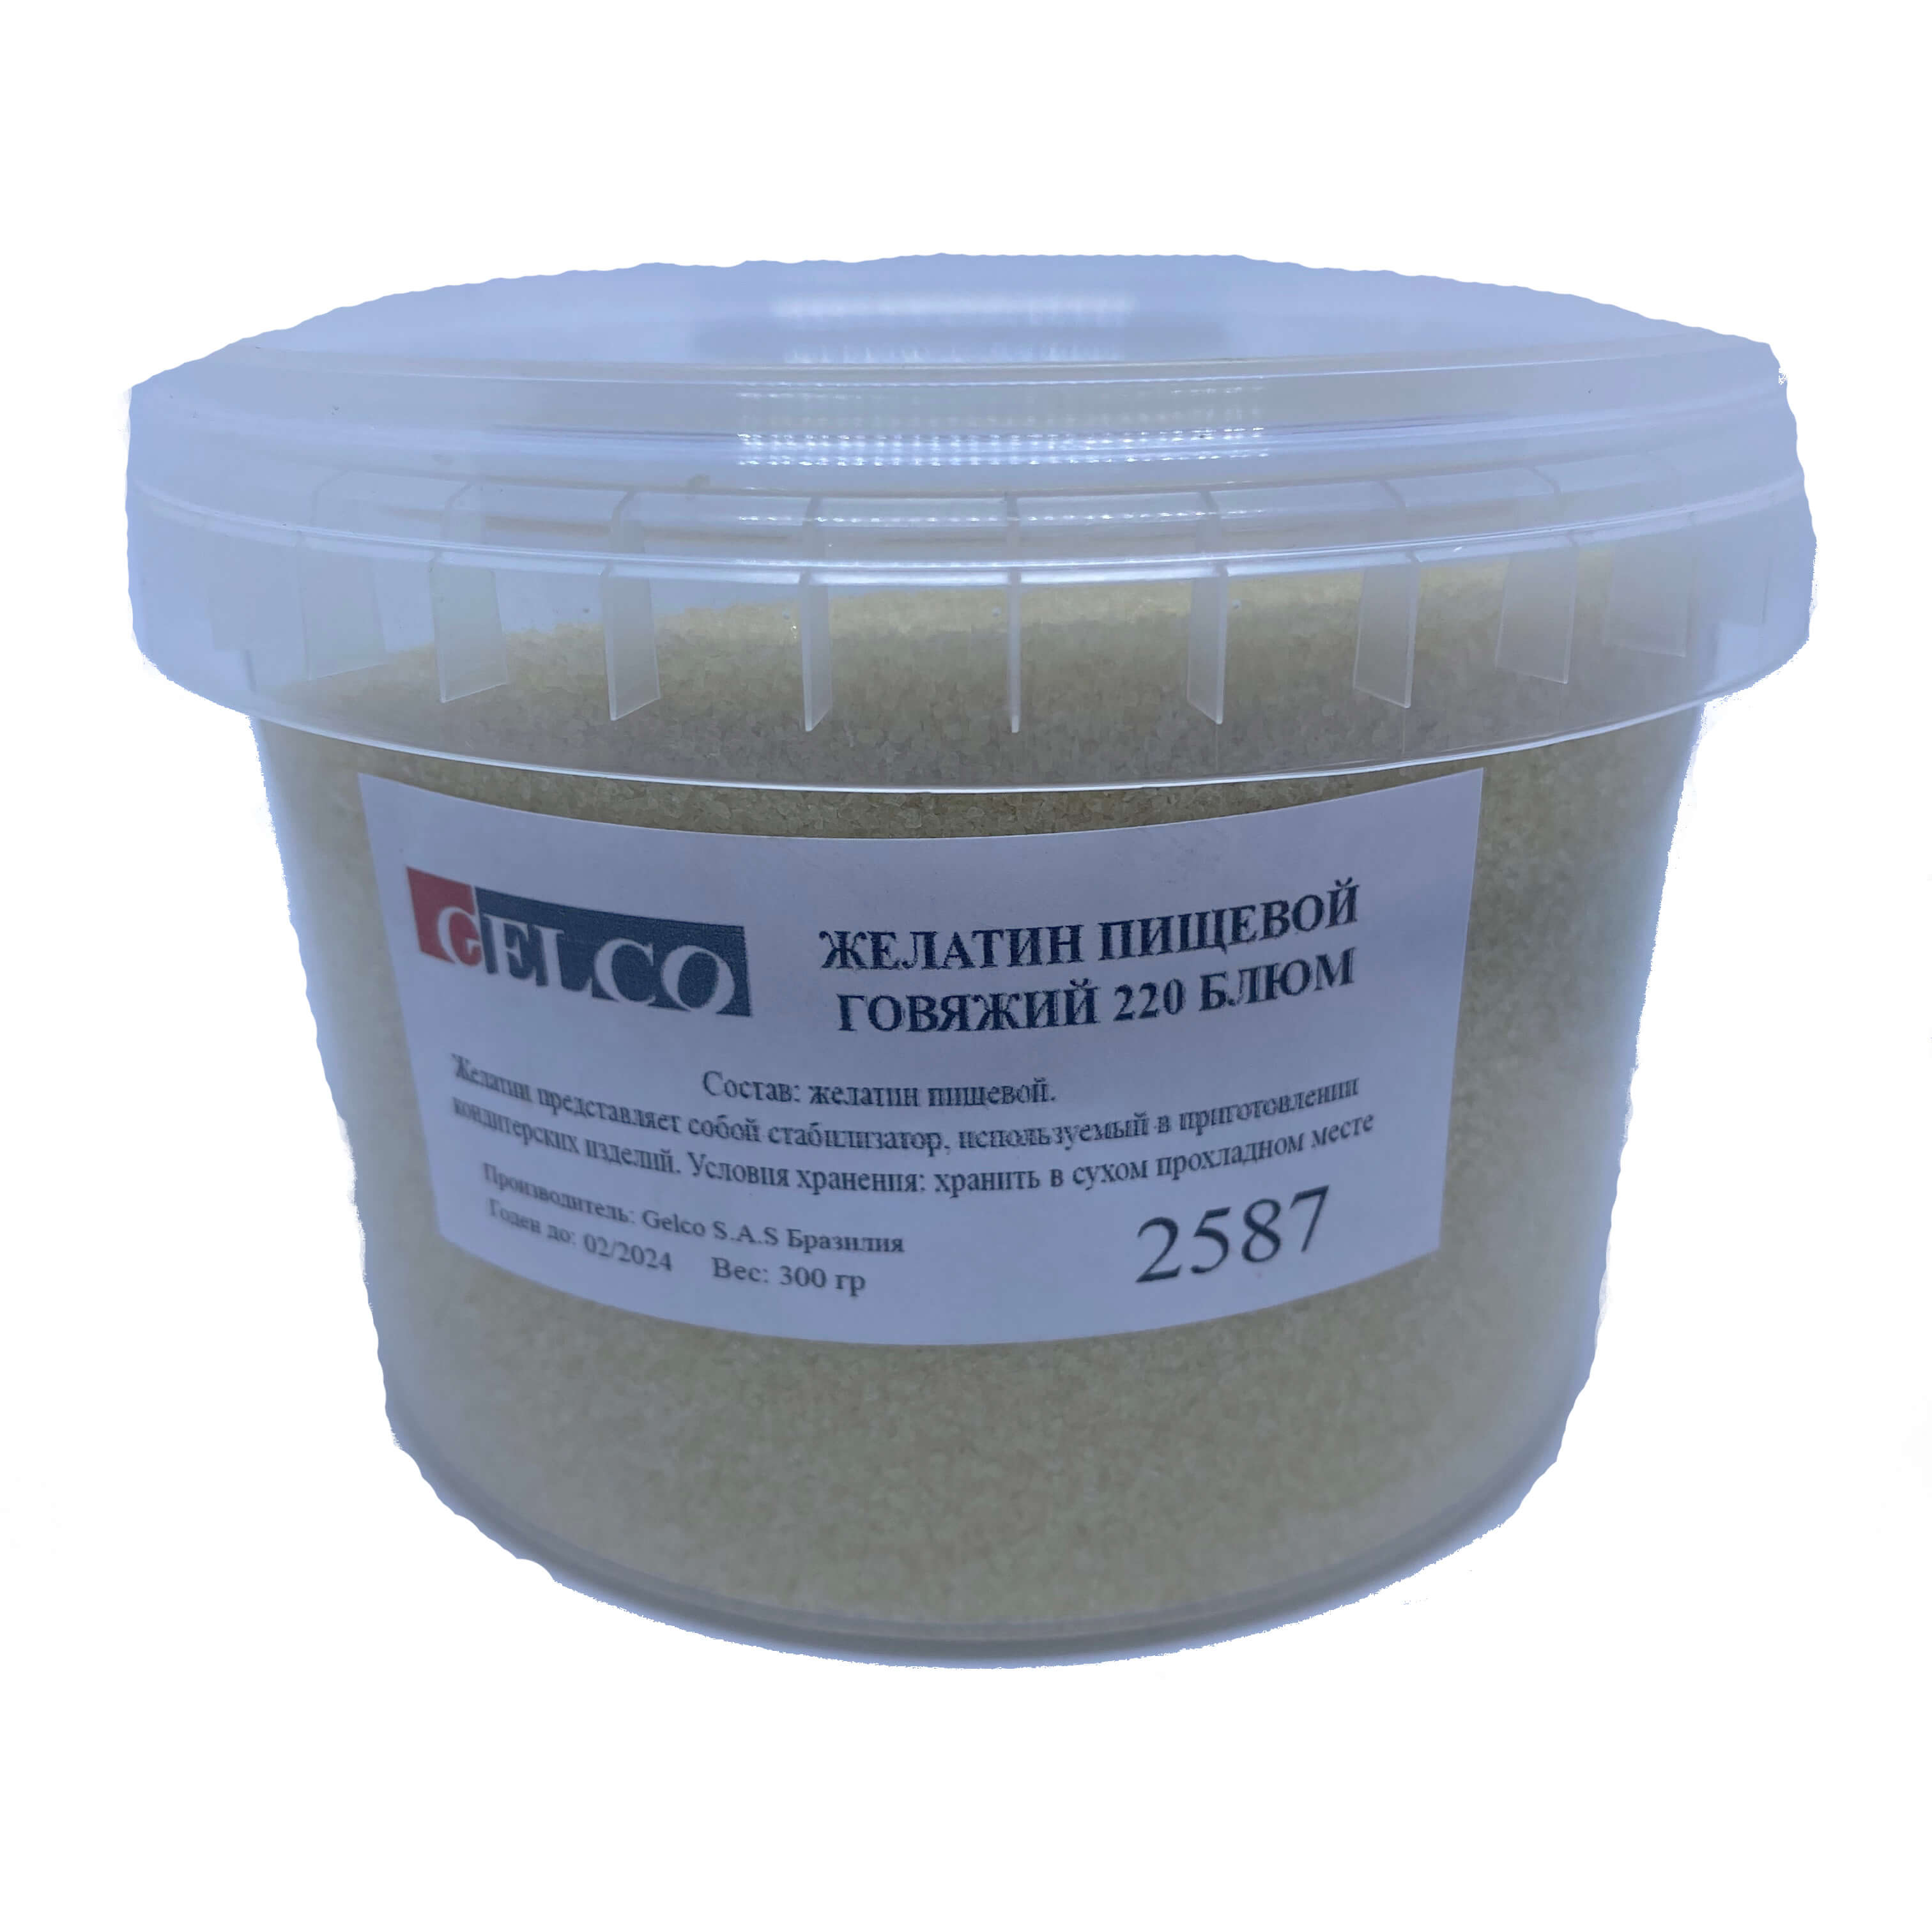 Желатин говяжий GELCO 220 bloom / 300 гр